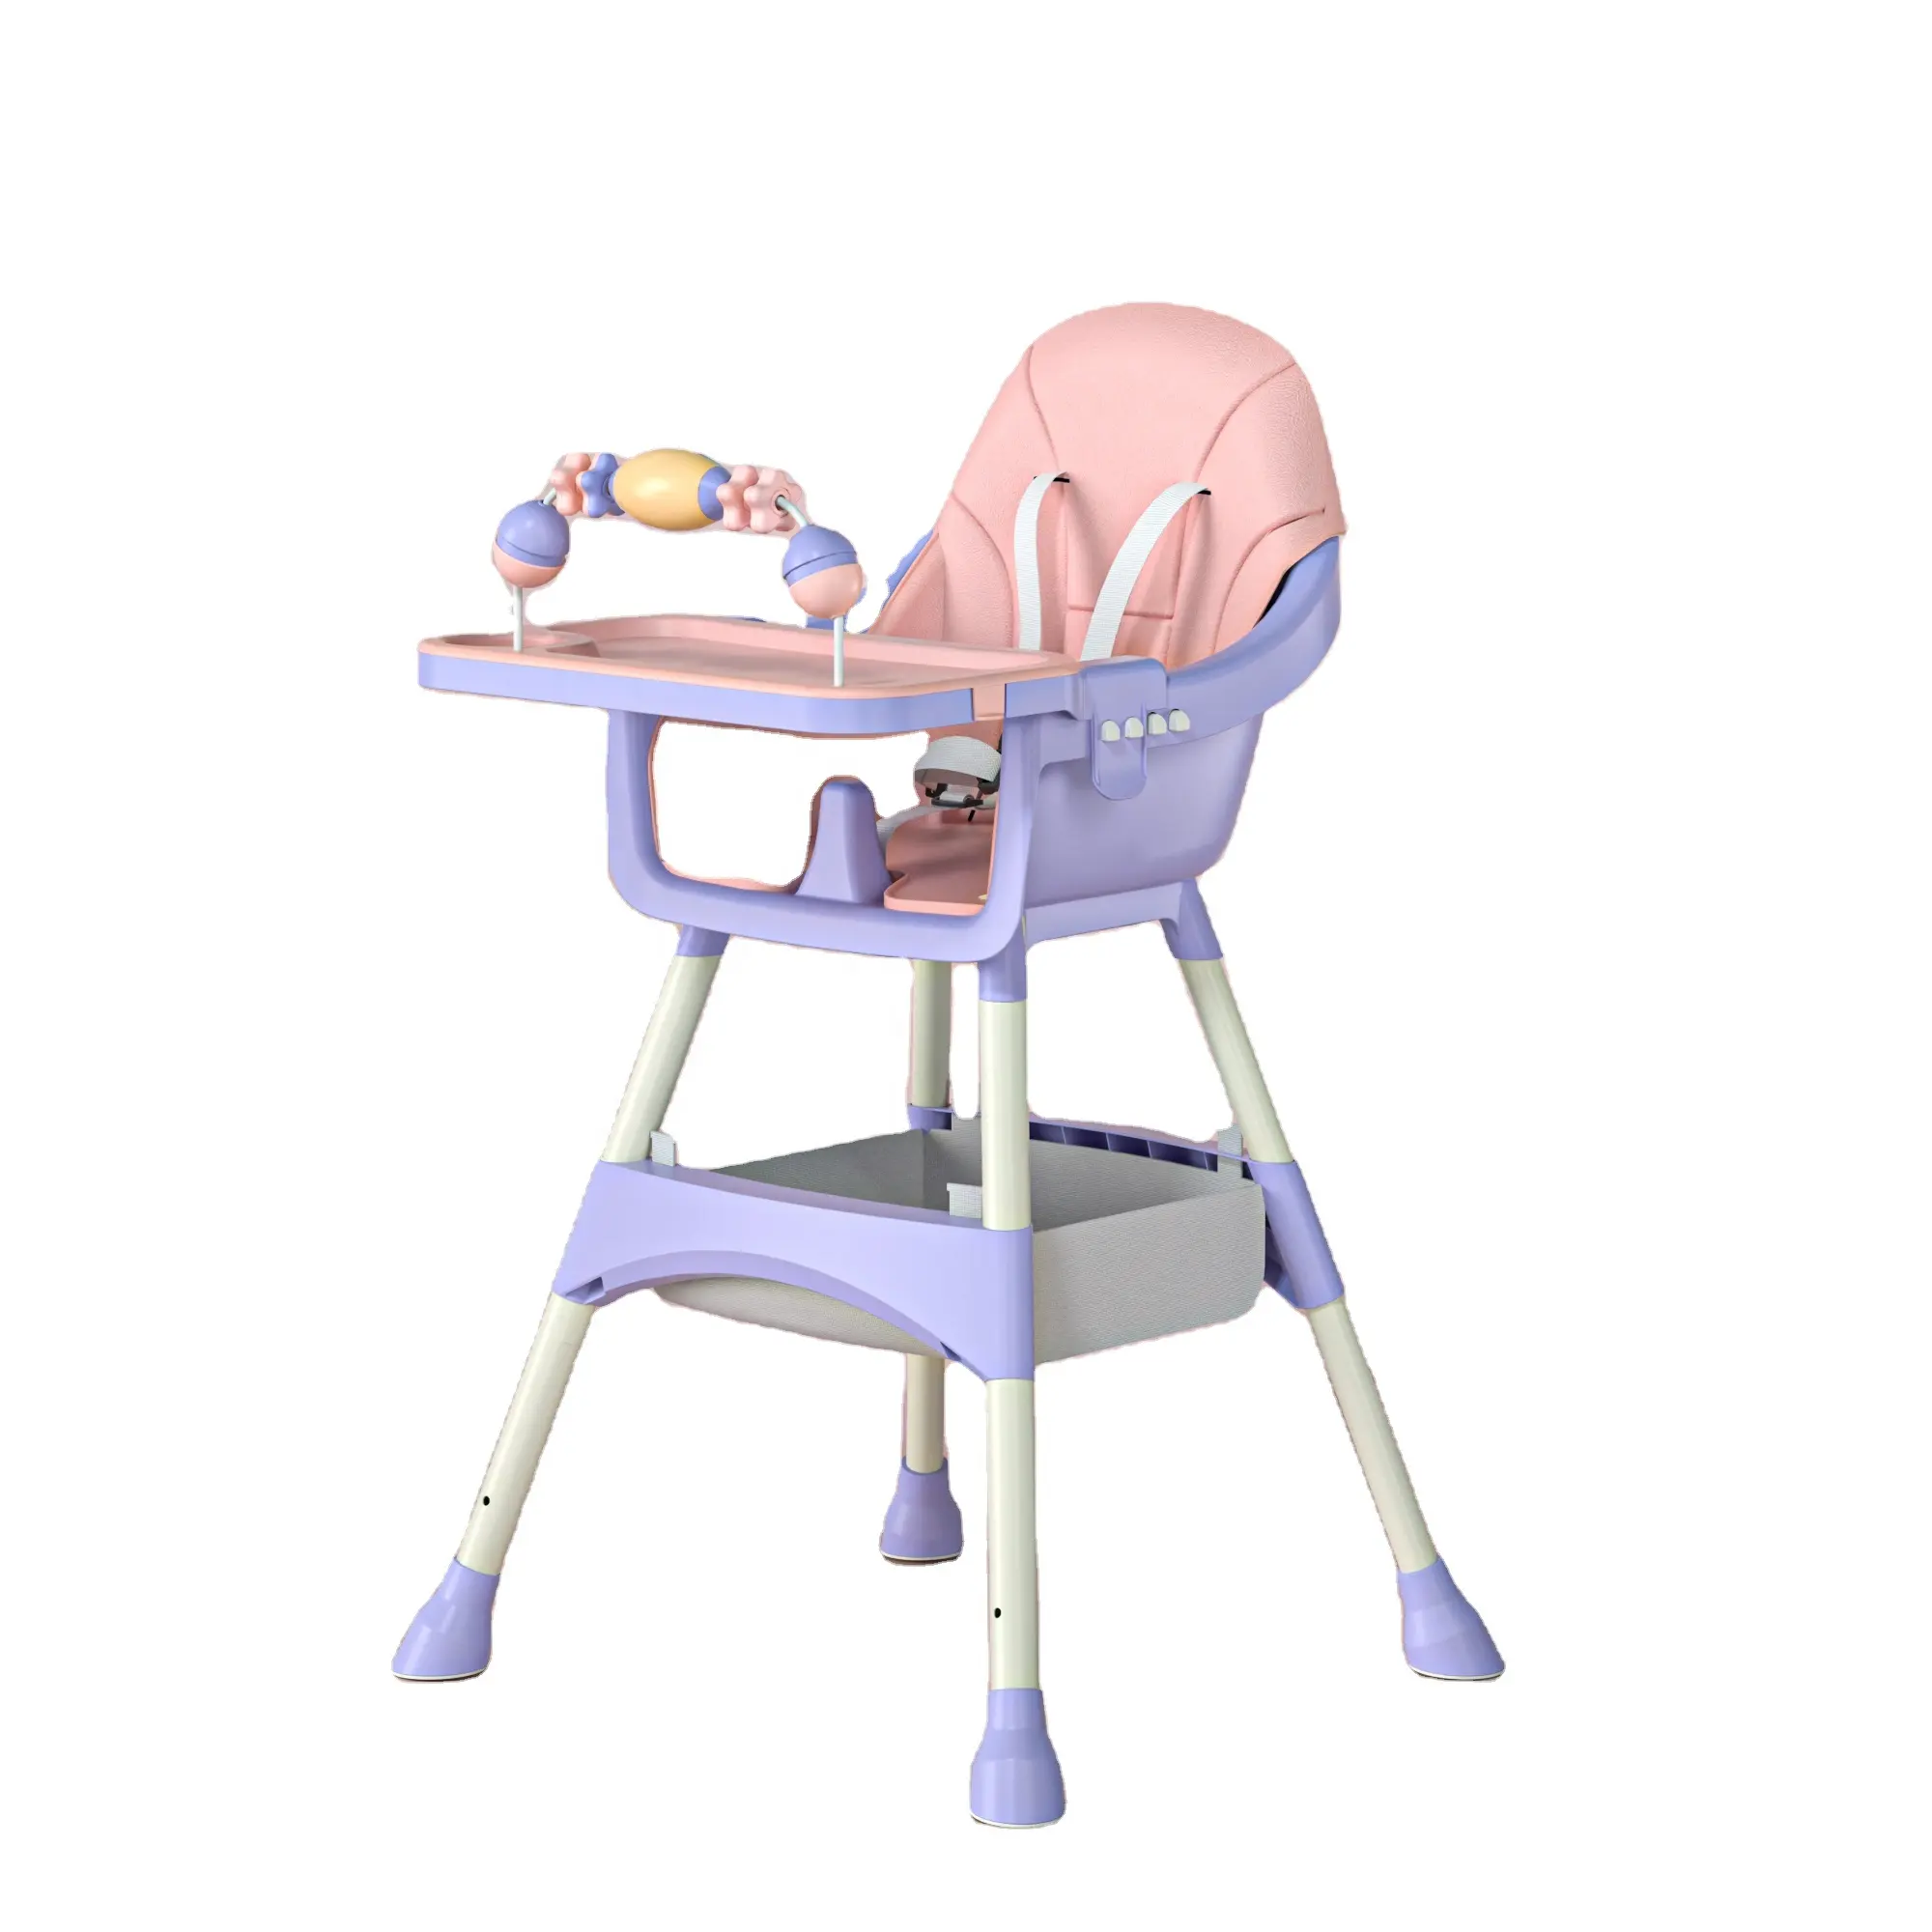 Chaise d'alimentation pour bébé avec sac d'appareil, 3 en 1, chaise haute multi-fonctions pour manger, avec bureau d'étude, design très solide